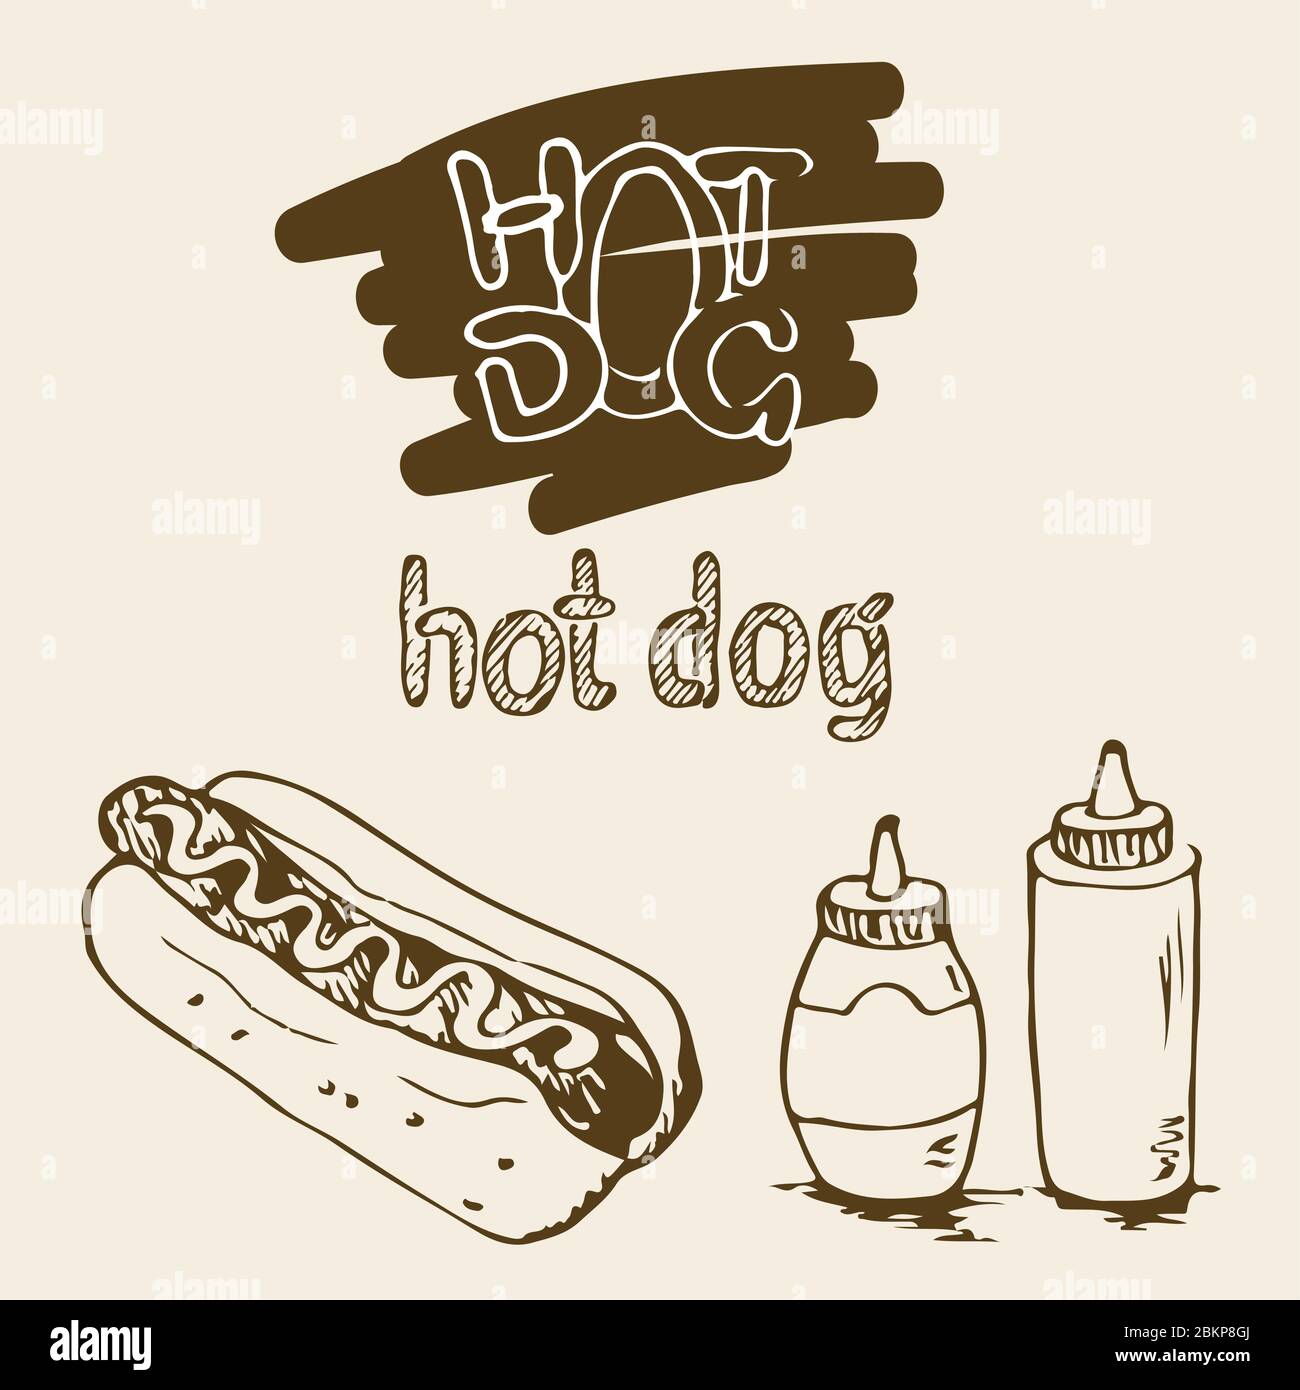 Handgezeichnete Abbildungen von Hot Dog. Fast-Food-Designelemente, Skizzen von Hotdog. Sauce und Mayonnaise in Kunststoffflaschen. Hot Dog handschriftlich Stock Vektor